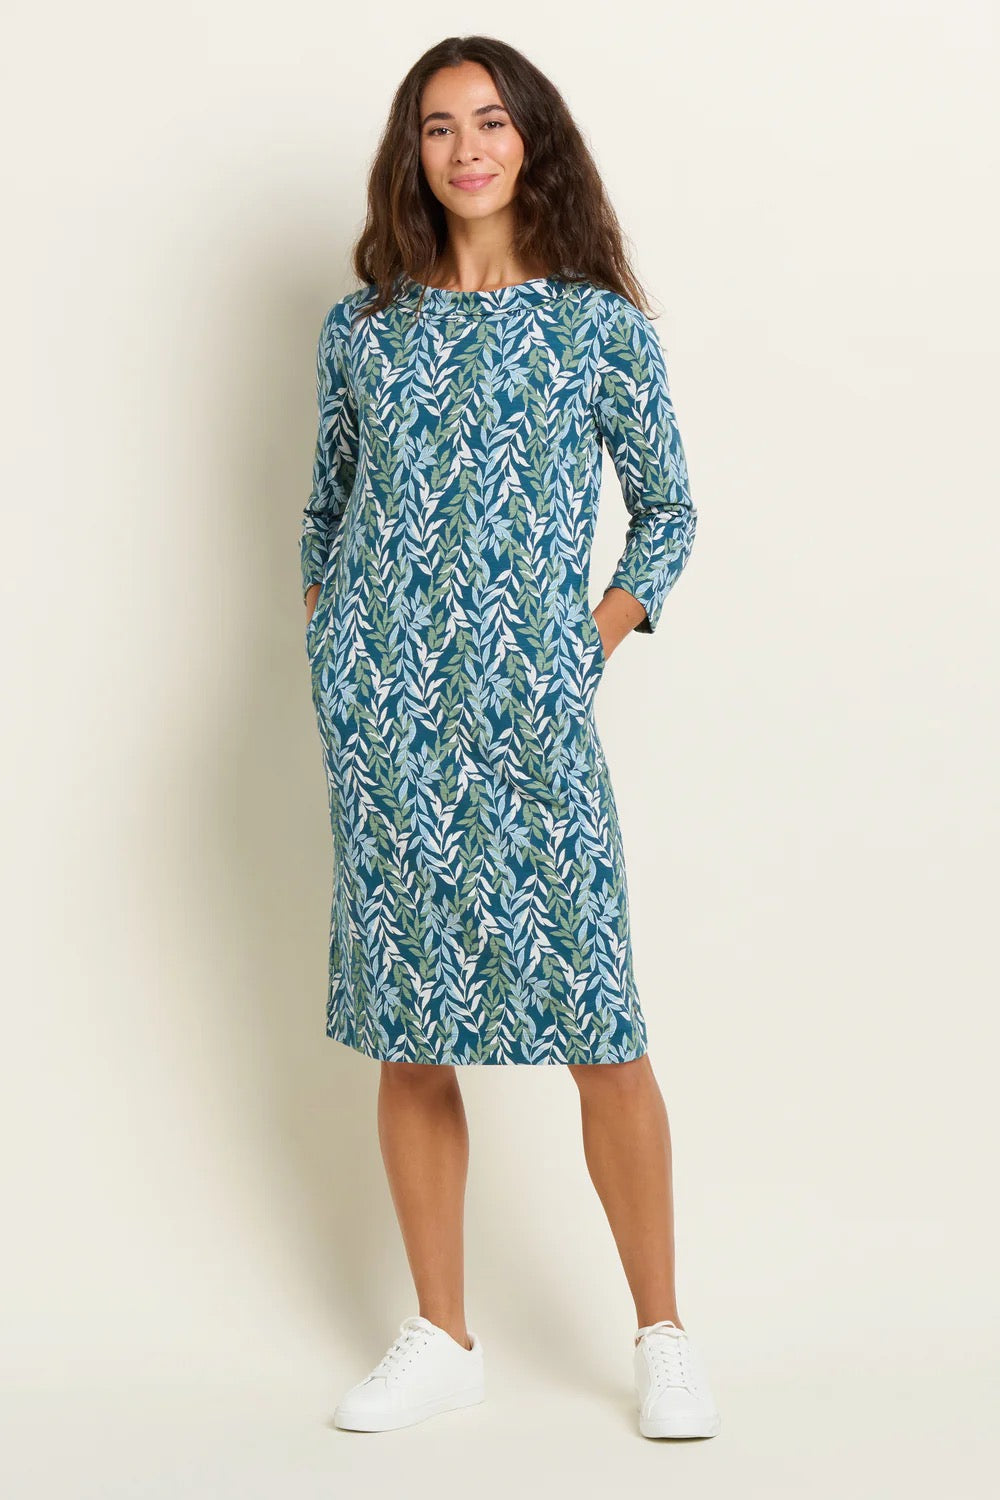 Brakeburn Women's Willow Knee-Length Dress - Blue/Green